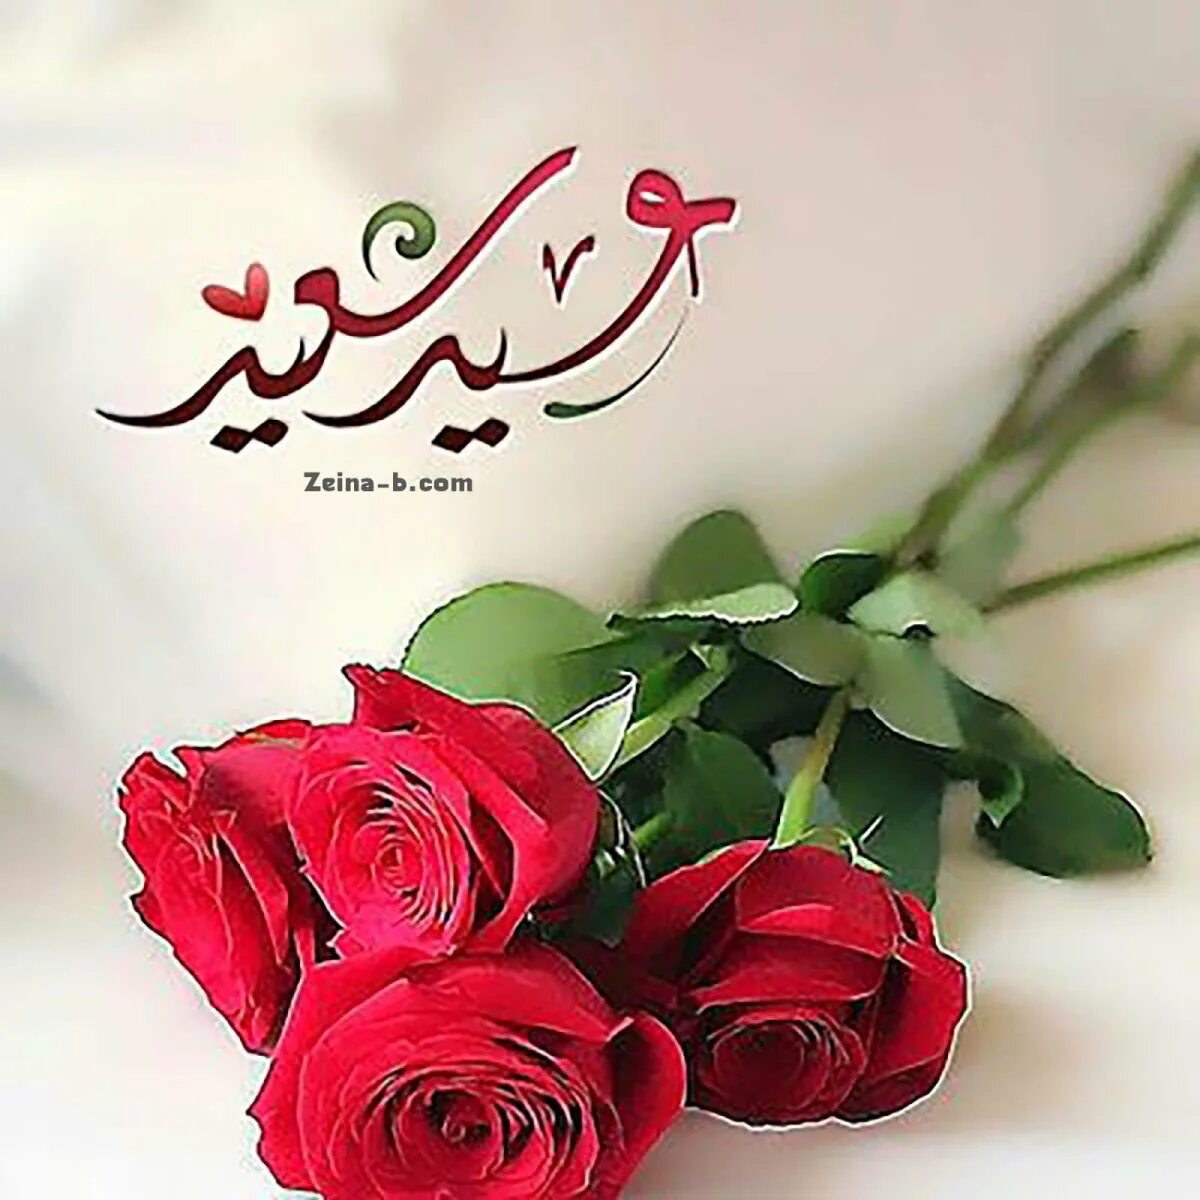 Мусульманские пожелания. Красивые мусульманские пожелания. Поздравления на арабском языке. Мусульманские цветы. Арабский язык поздравления